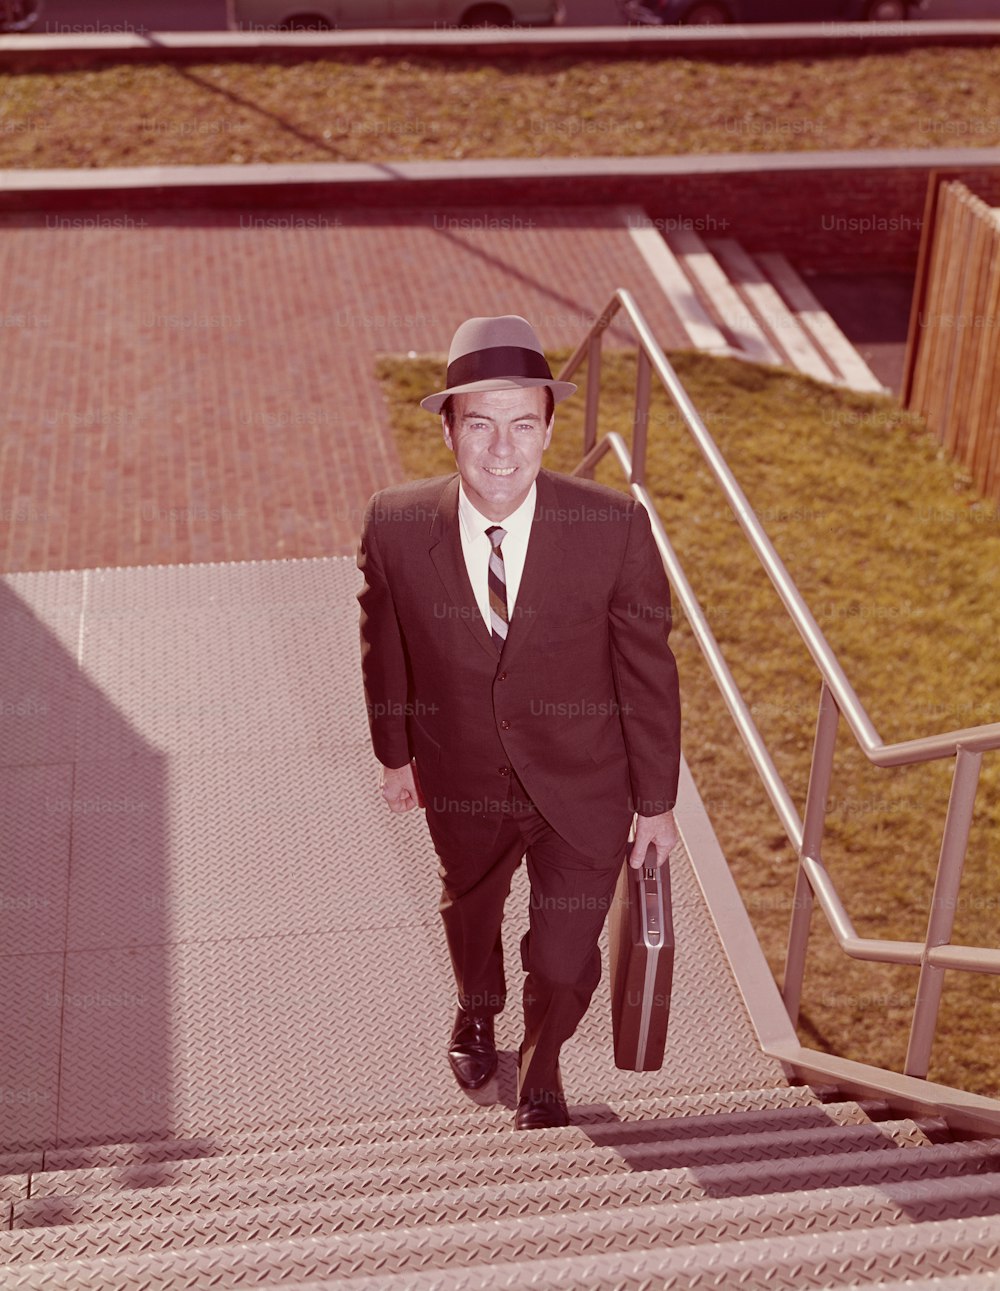 STATI UNITI - 1960 CIRCA: Venditore che sale le scale, vista sopraelevata.